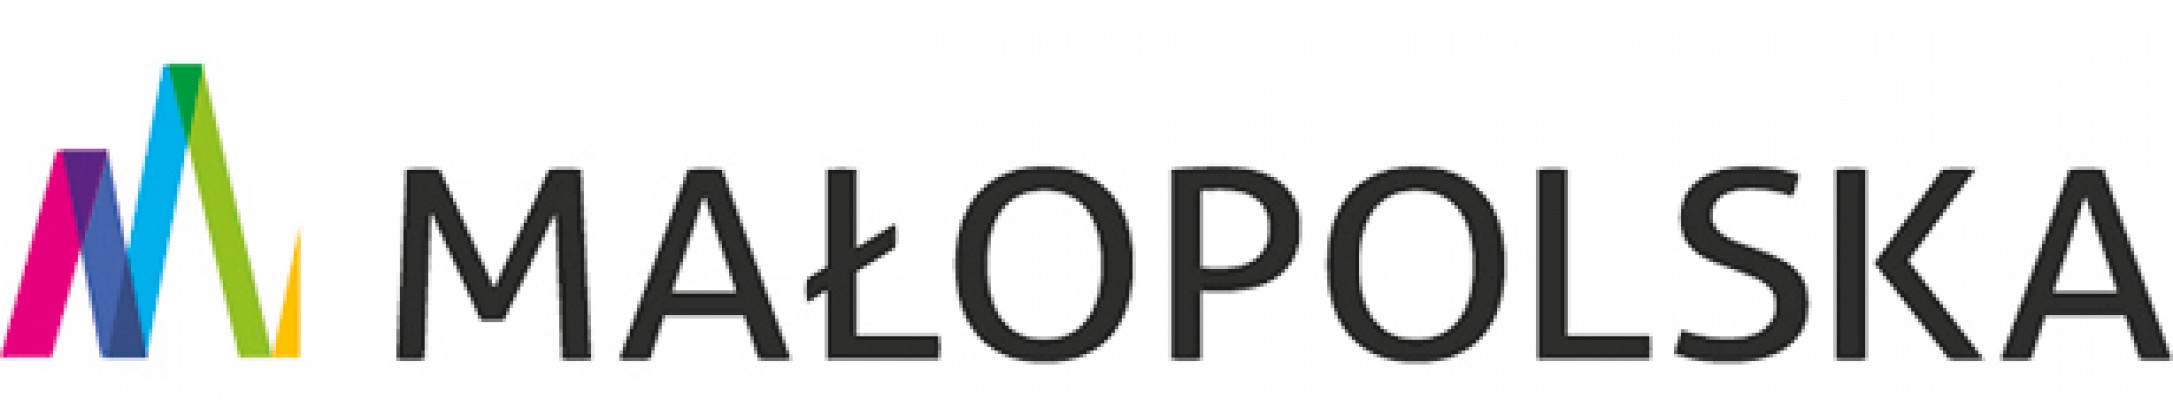 malopolska logotyp